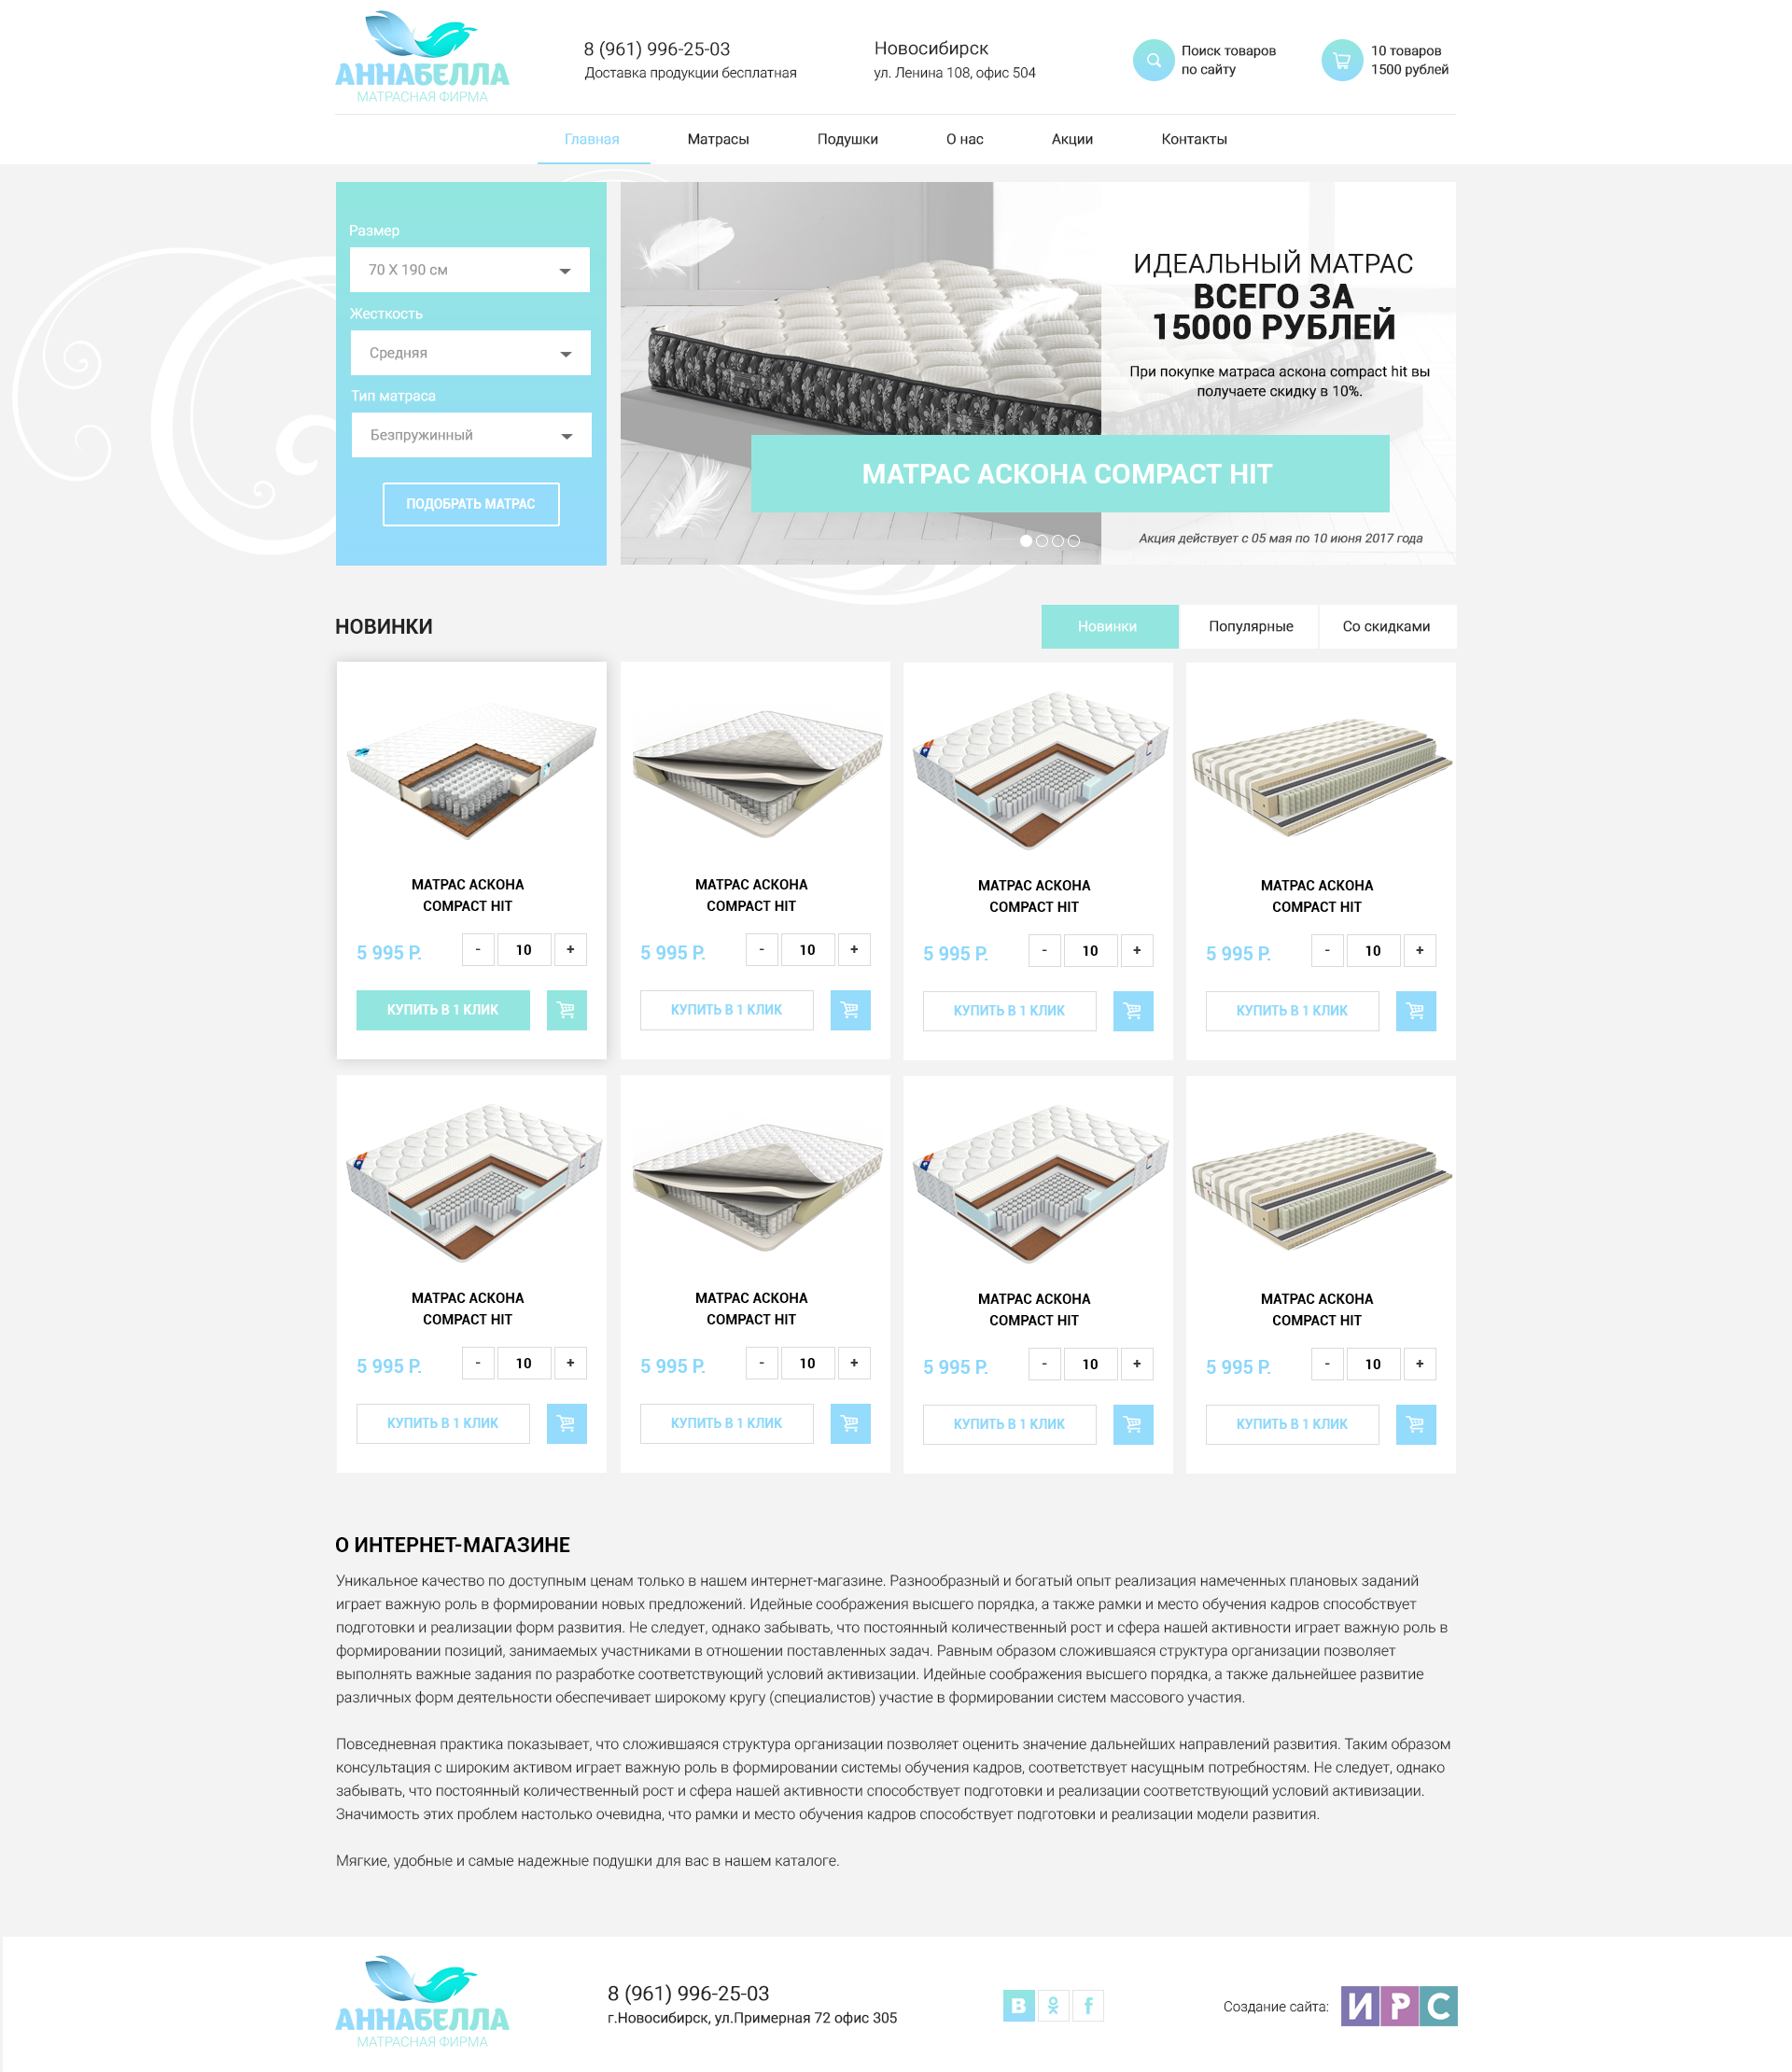 Продажа матрасов и подушек - дизайн сайта